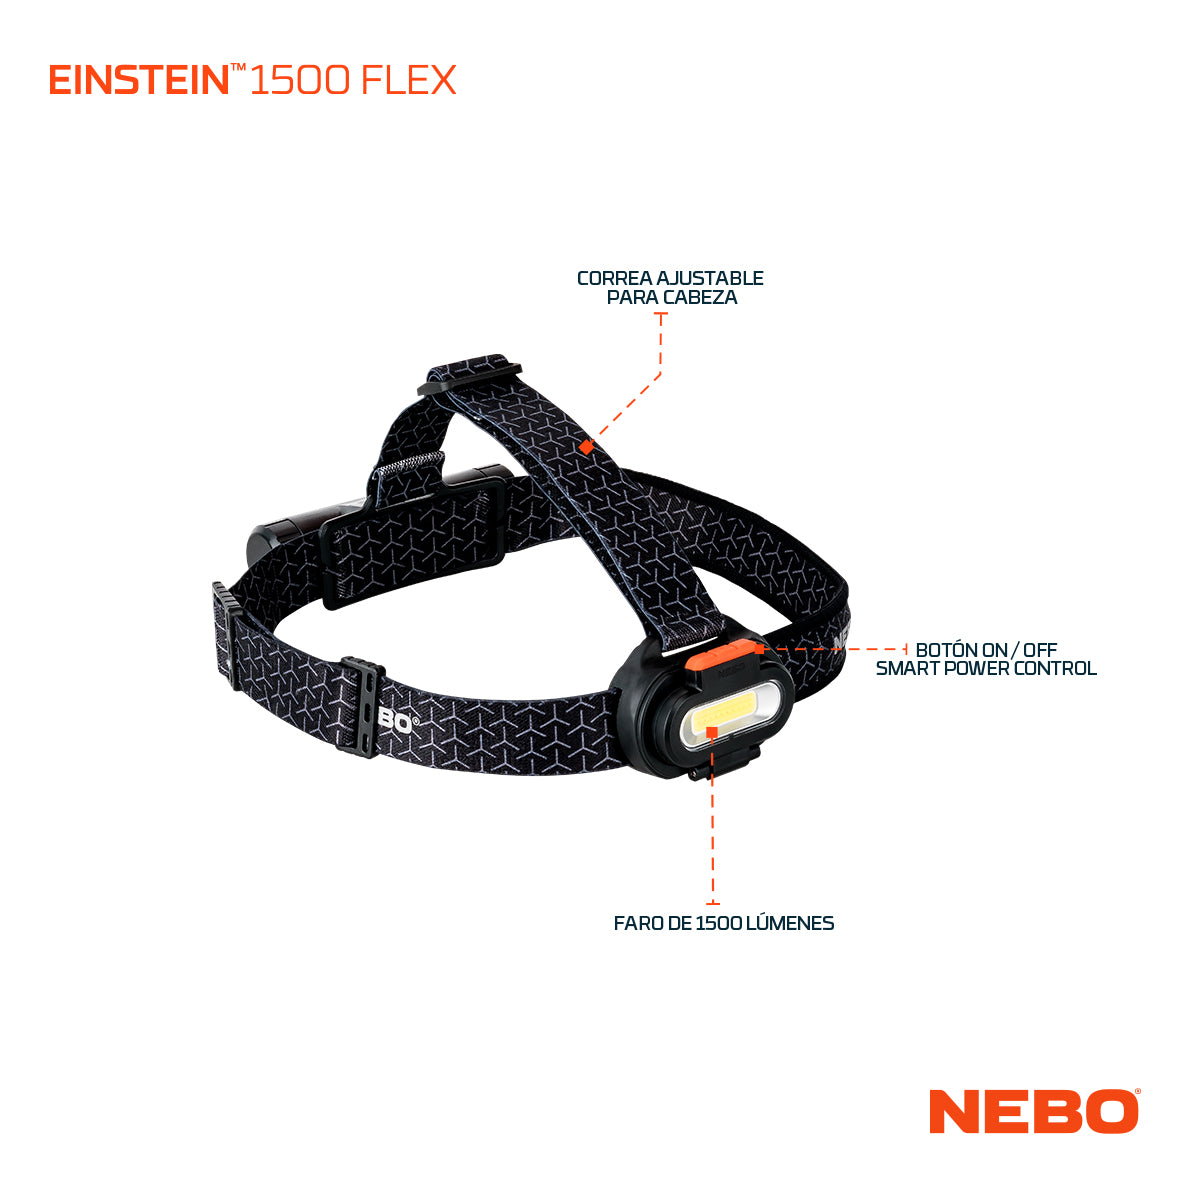 LED Stirnlampe NEBO Einstein 1500 Flex Alu/ABS